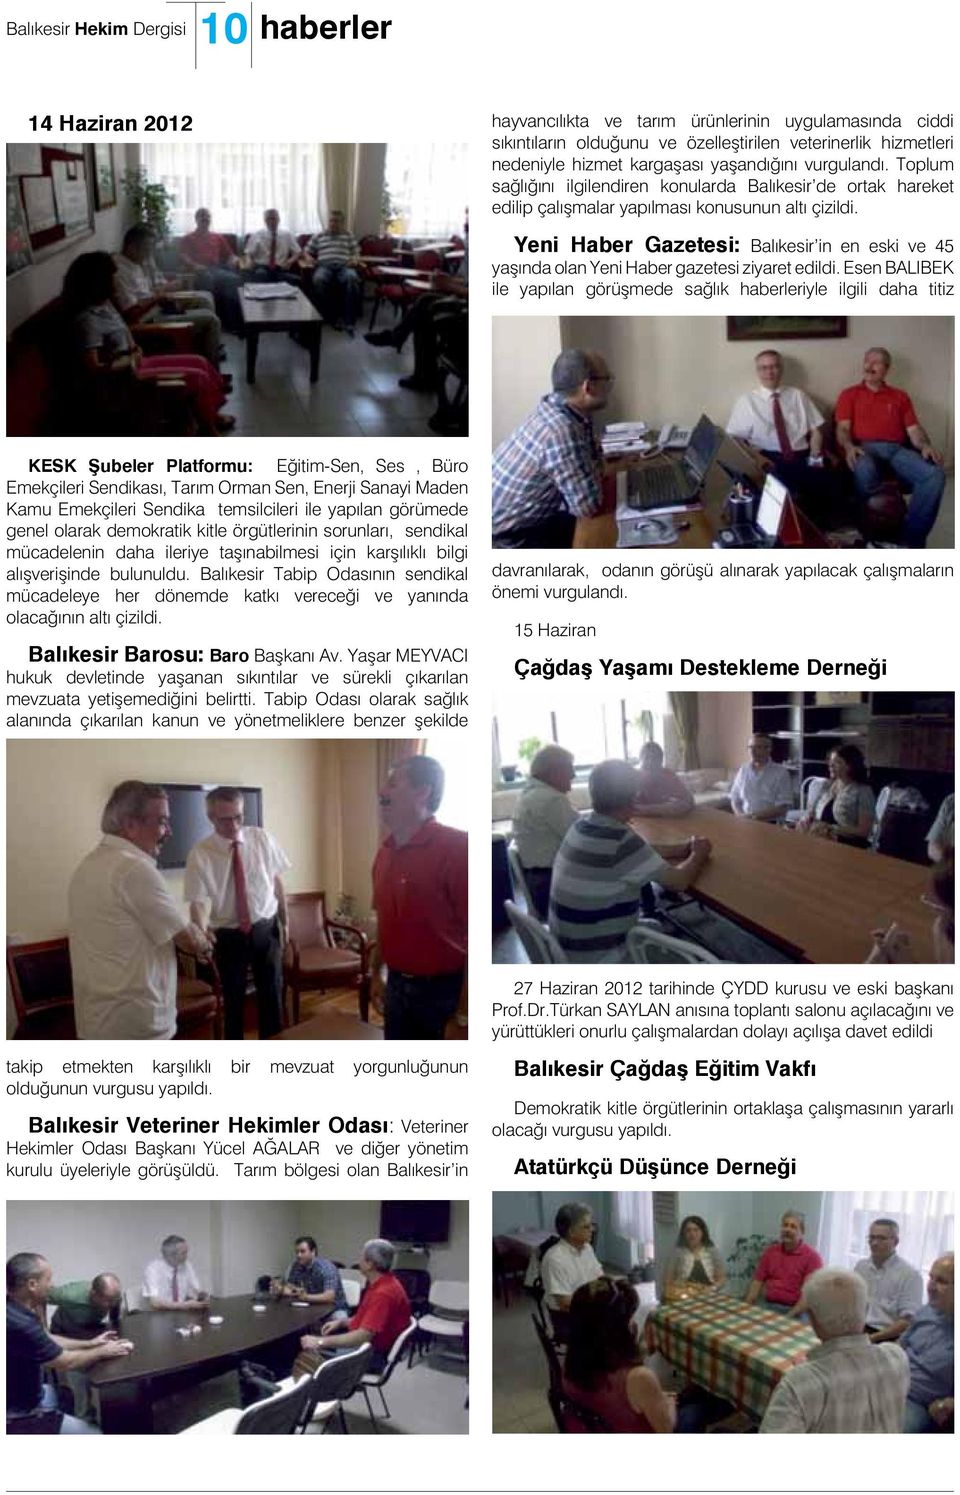 Yeni Haber Gazetesi: Balıkesir in en eski ve 45 yaşında olan Yeni Haber gazetesi ziyaret edildi.